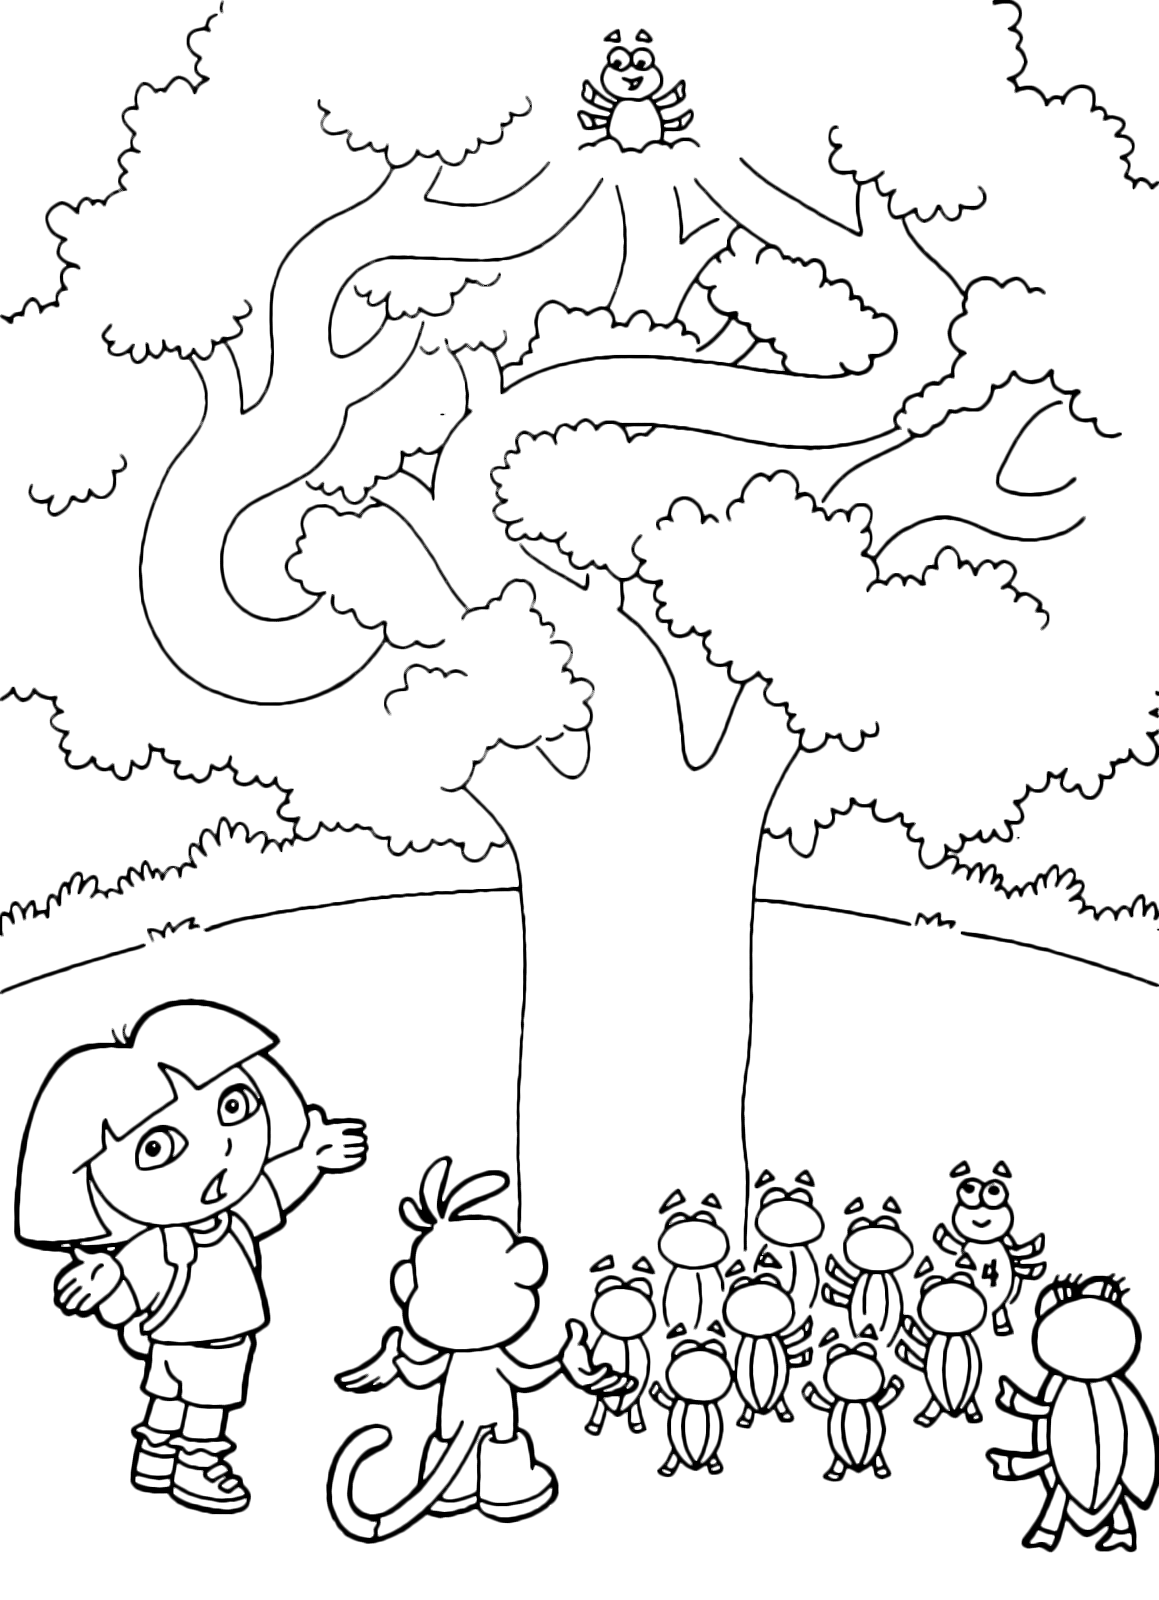 Dora l'esploratrice - Dora e Boots cercano un coleottero sull'albero